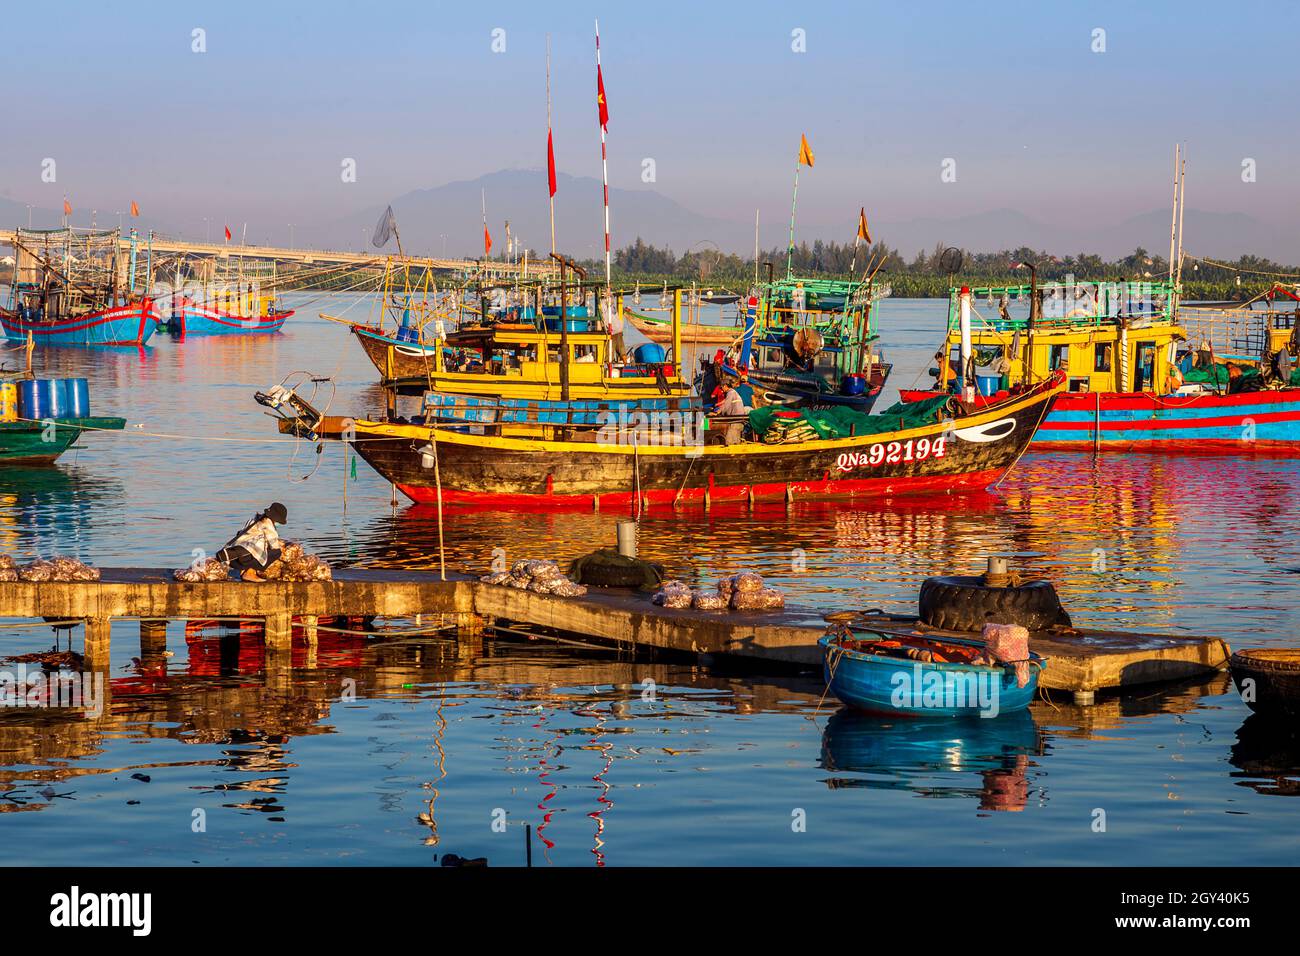 Jetée de pêche au village de pêche Ben Duy Hai avec bateaux de pêche colorés alignés. Banque D'Images